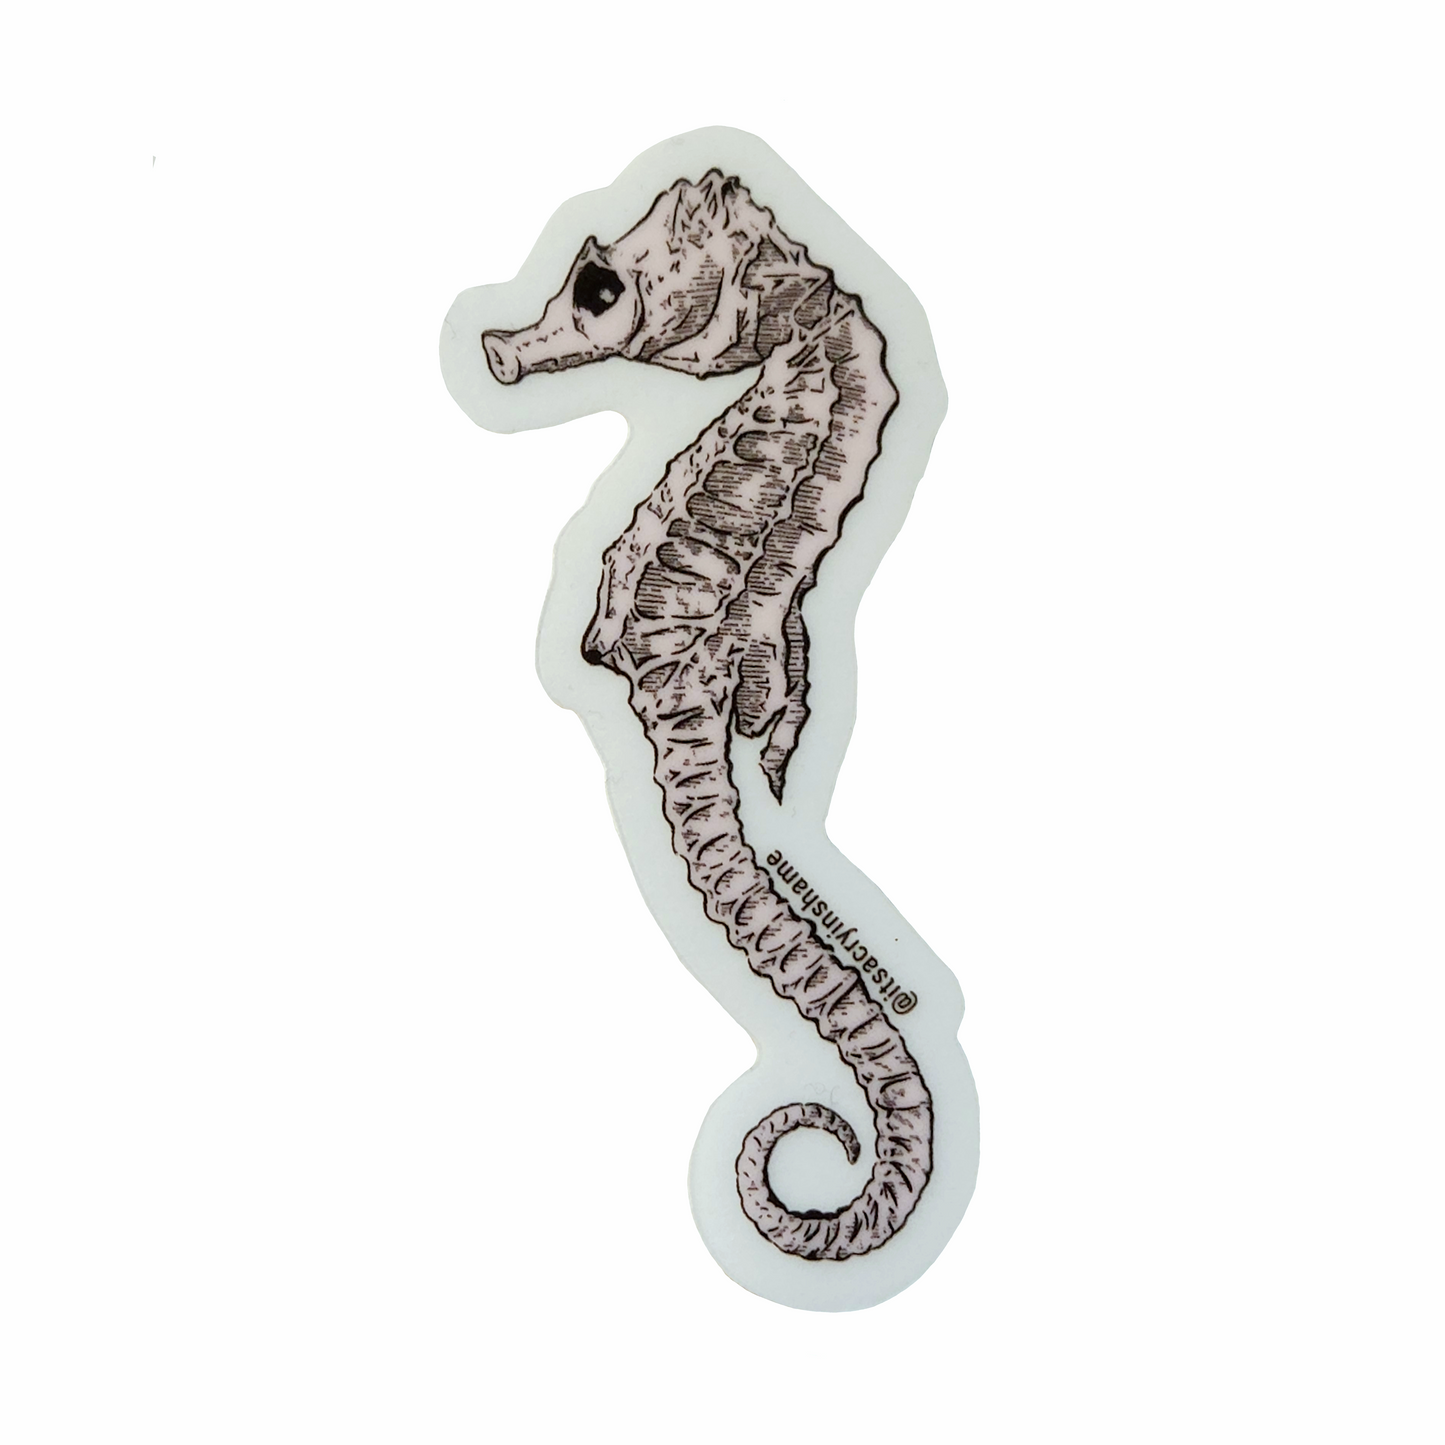 'Seahorse' Sticker